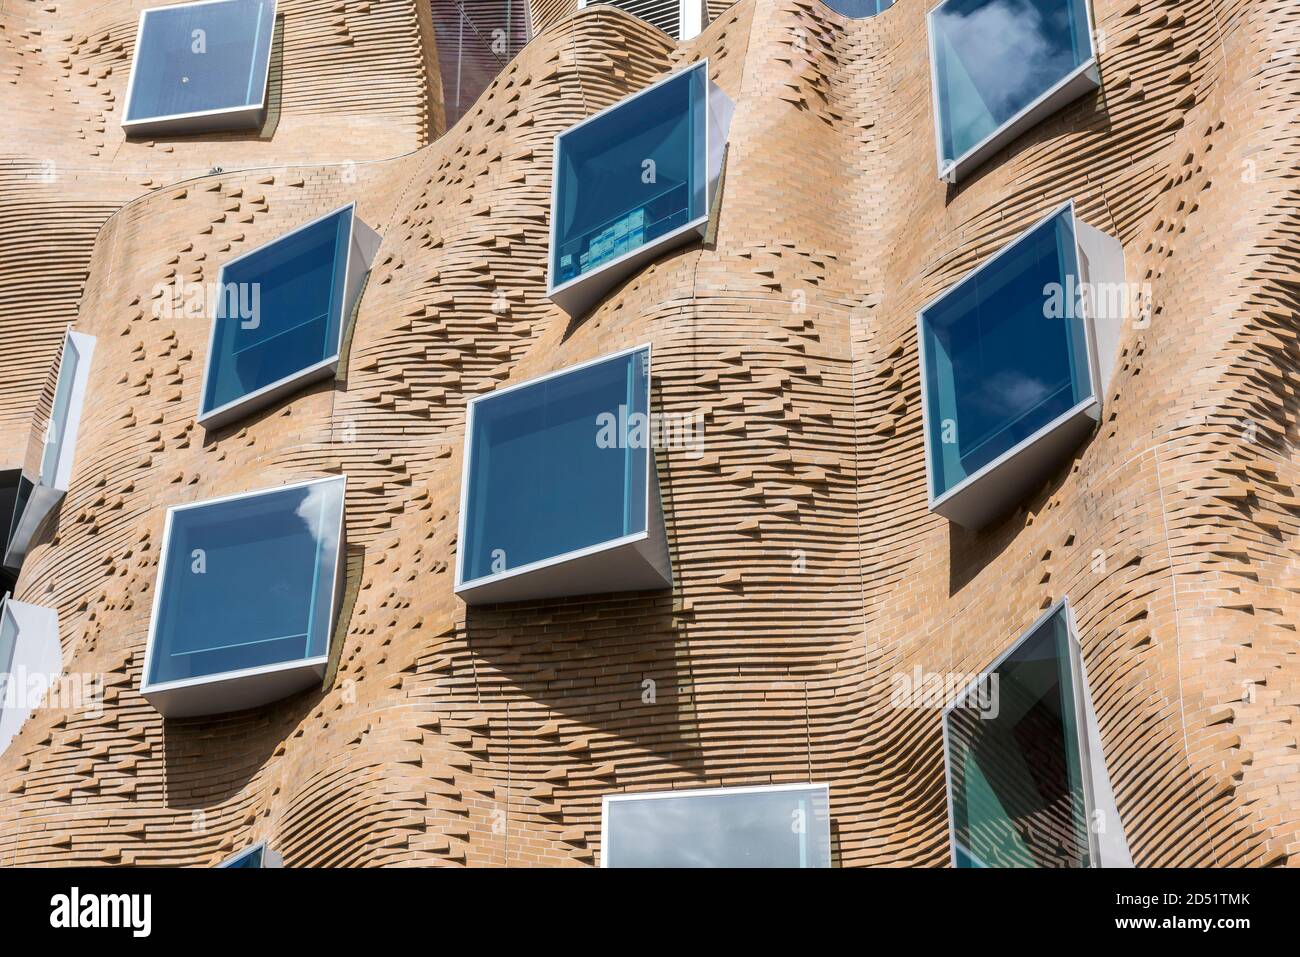 Detailansicht der gewellten Ziegelwand. DR Chau Chak Wing Building, UTS Business School, Sydney, Australien. Architekt: Gehry Partners, LLP, 2015. Stockfoto